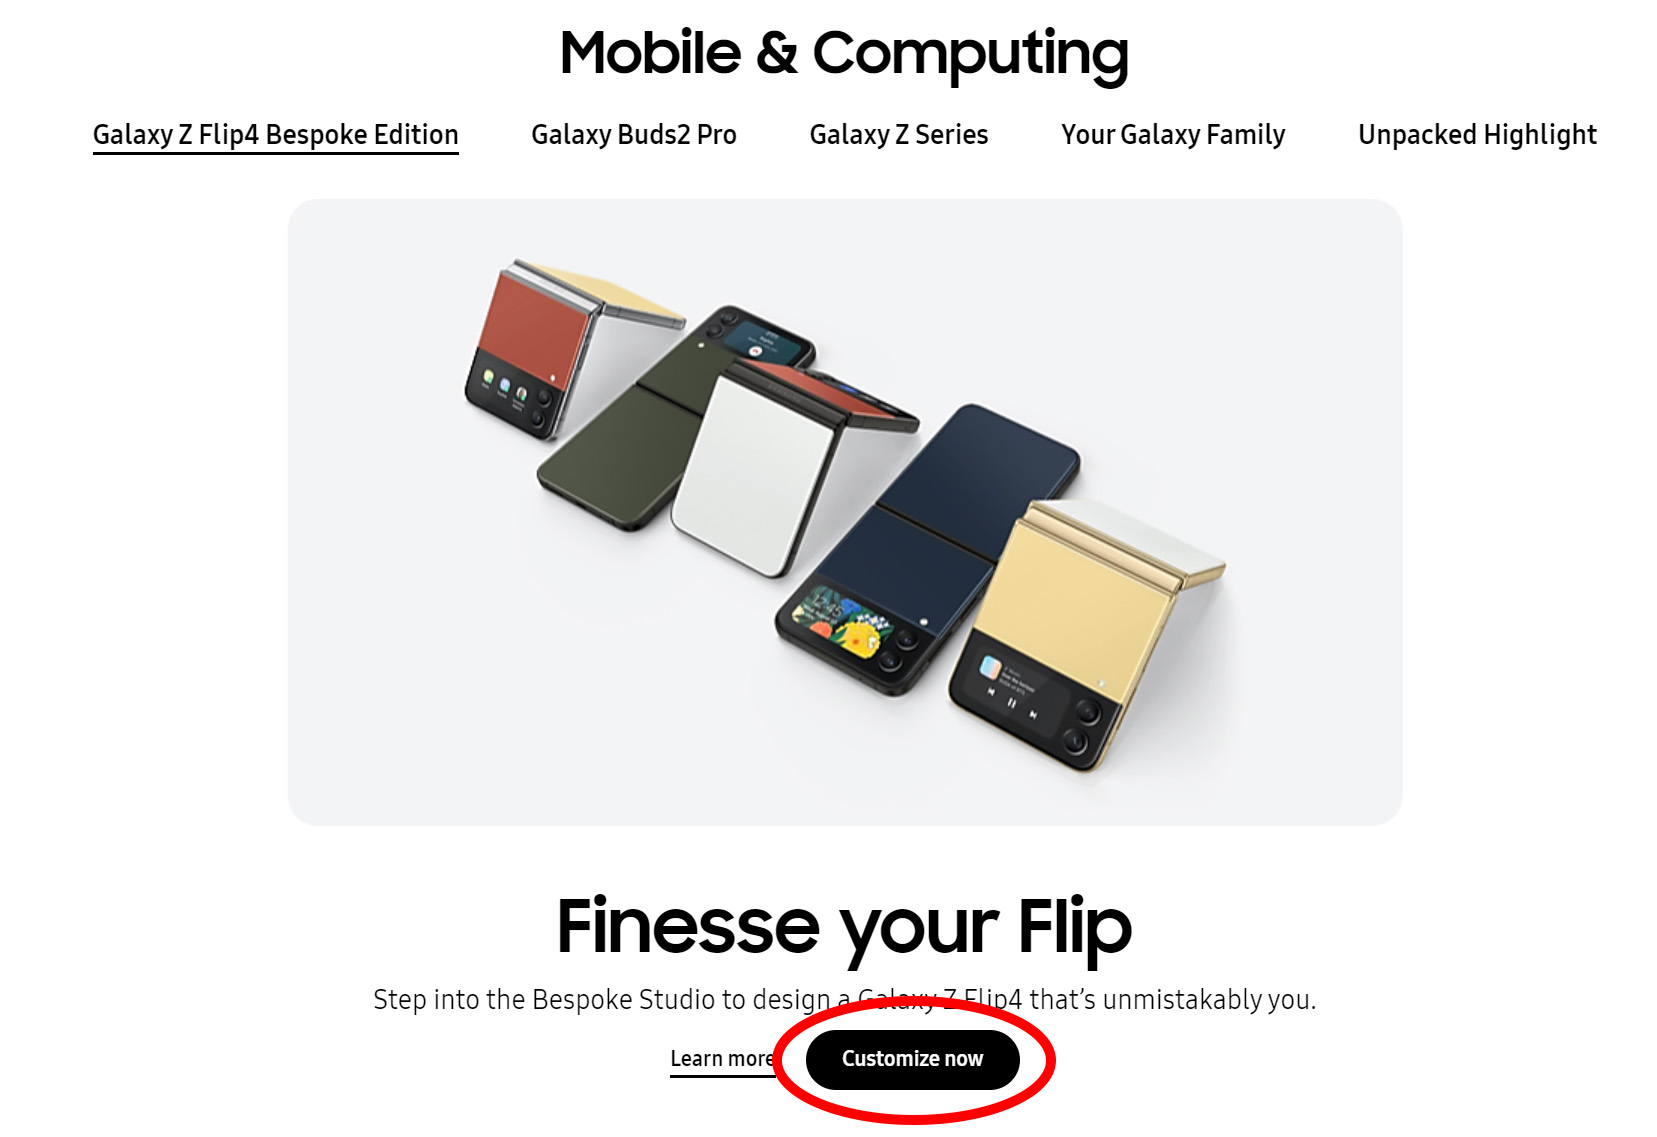 Galaxy Z Flip 4 sipariş sayfasındaki özelleştir düğmesine tıklamak